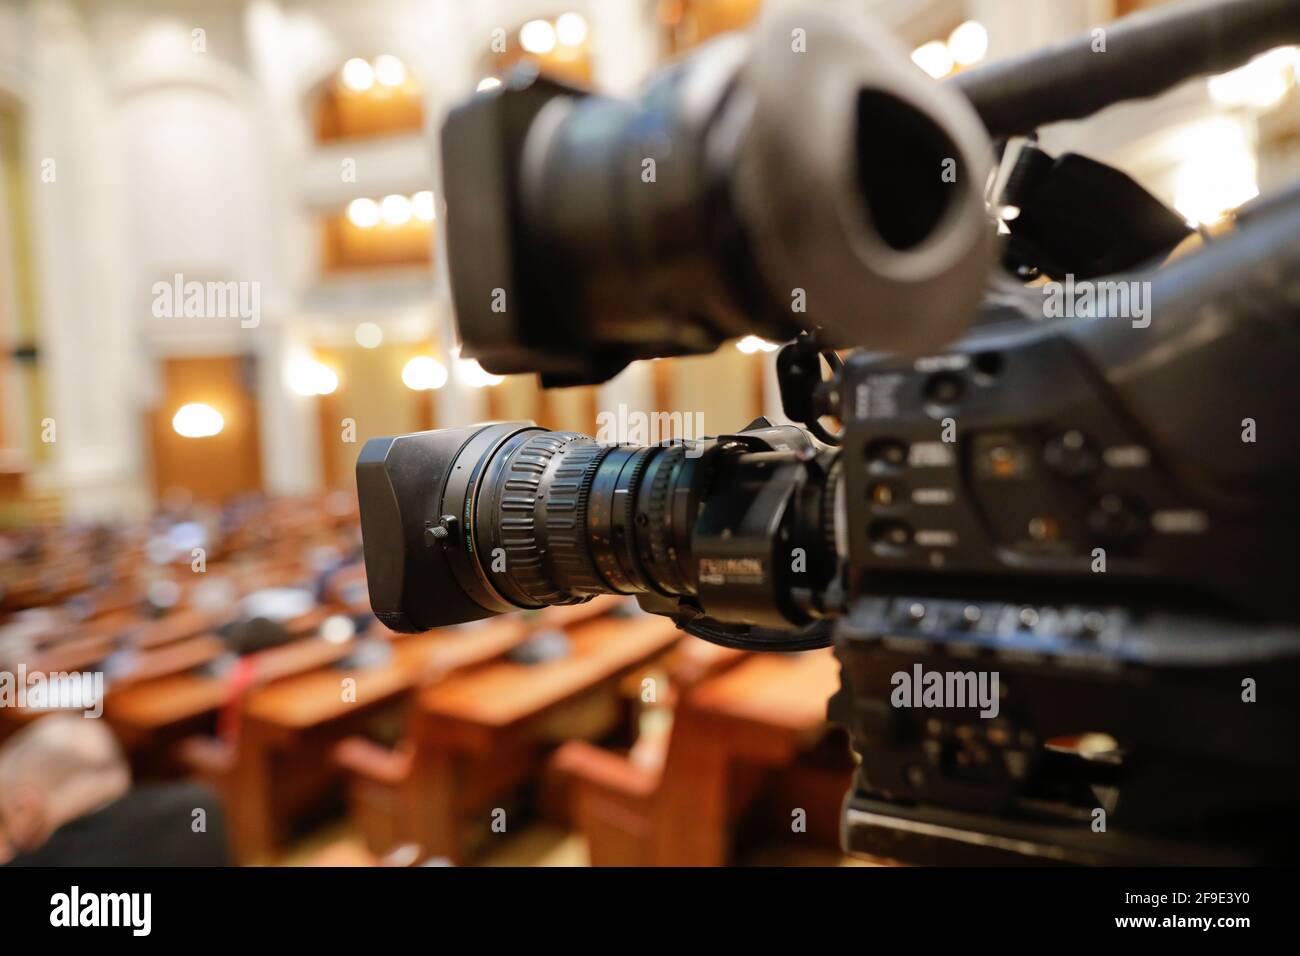 Bucarest, Romania - 14 aprile 2021: Dettagli con una videocamera Sony CineAlta con un obiettivo Fujinon utilizzato per una trasmissione di notizie dal vivo. Foto Stock